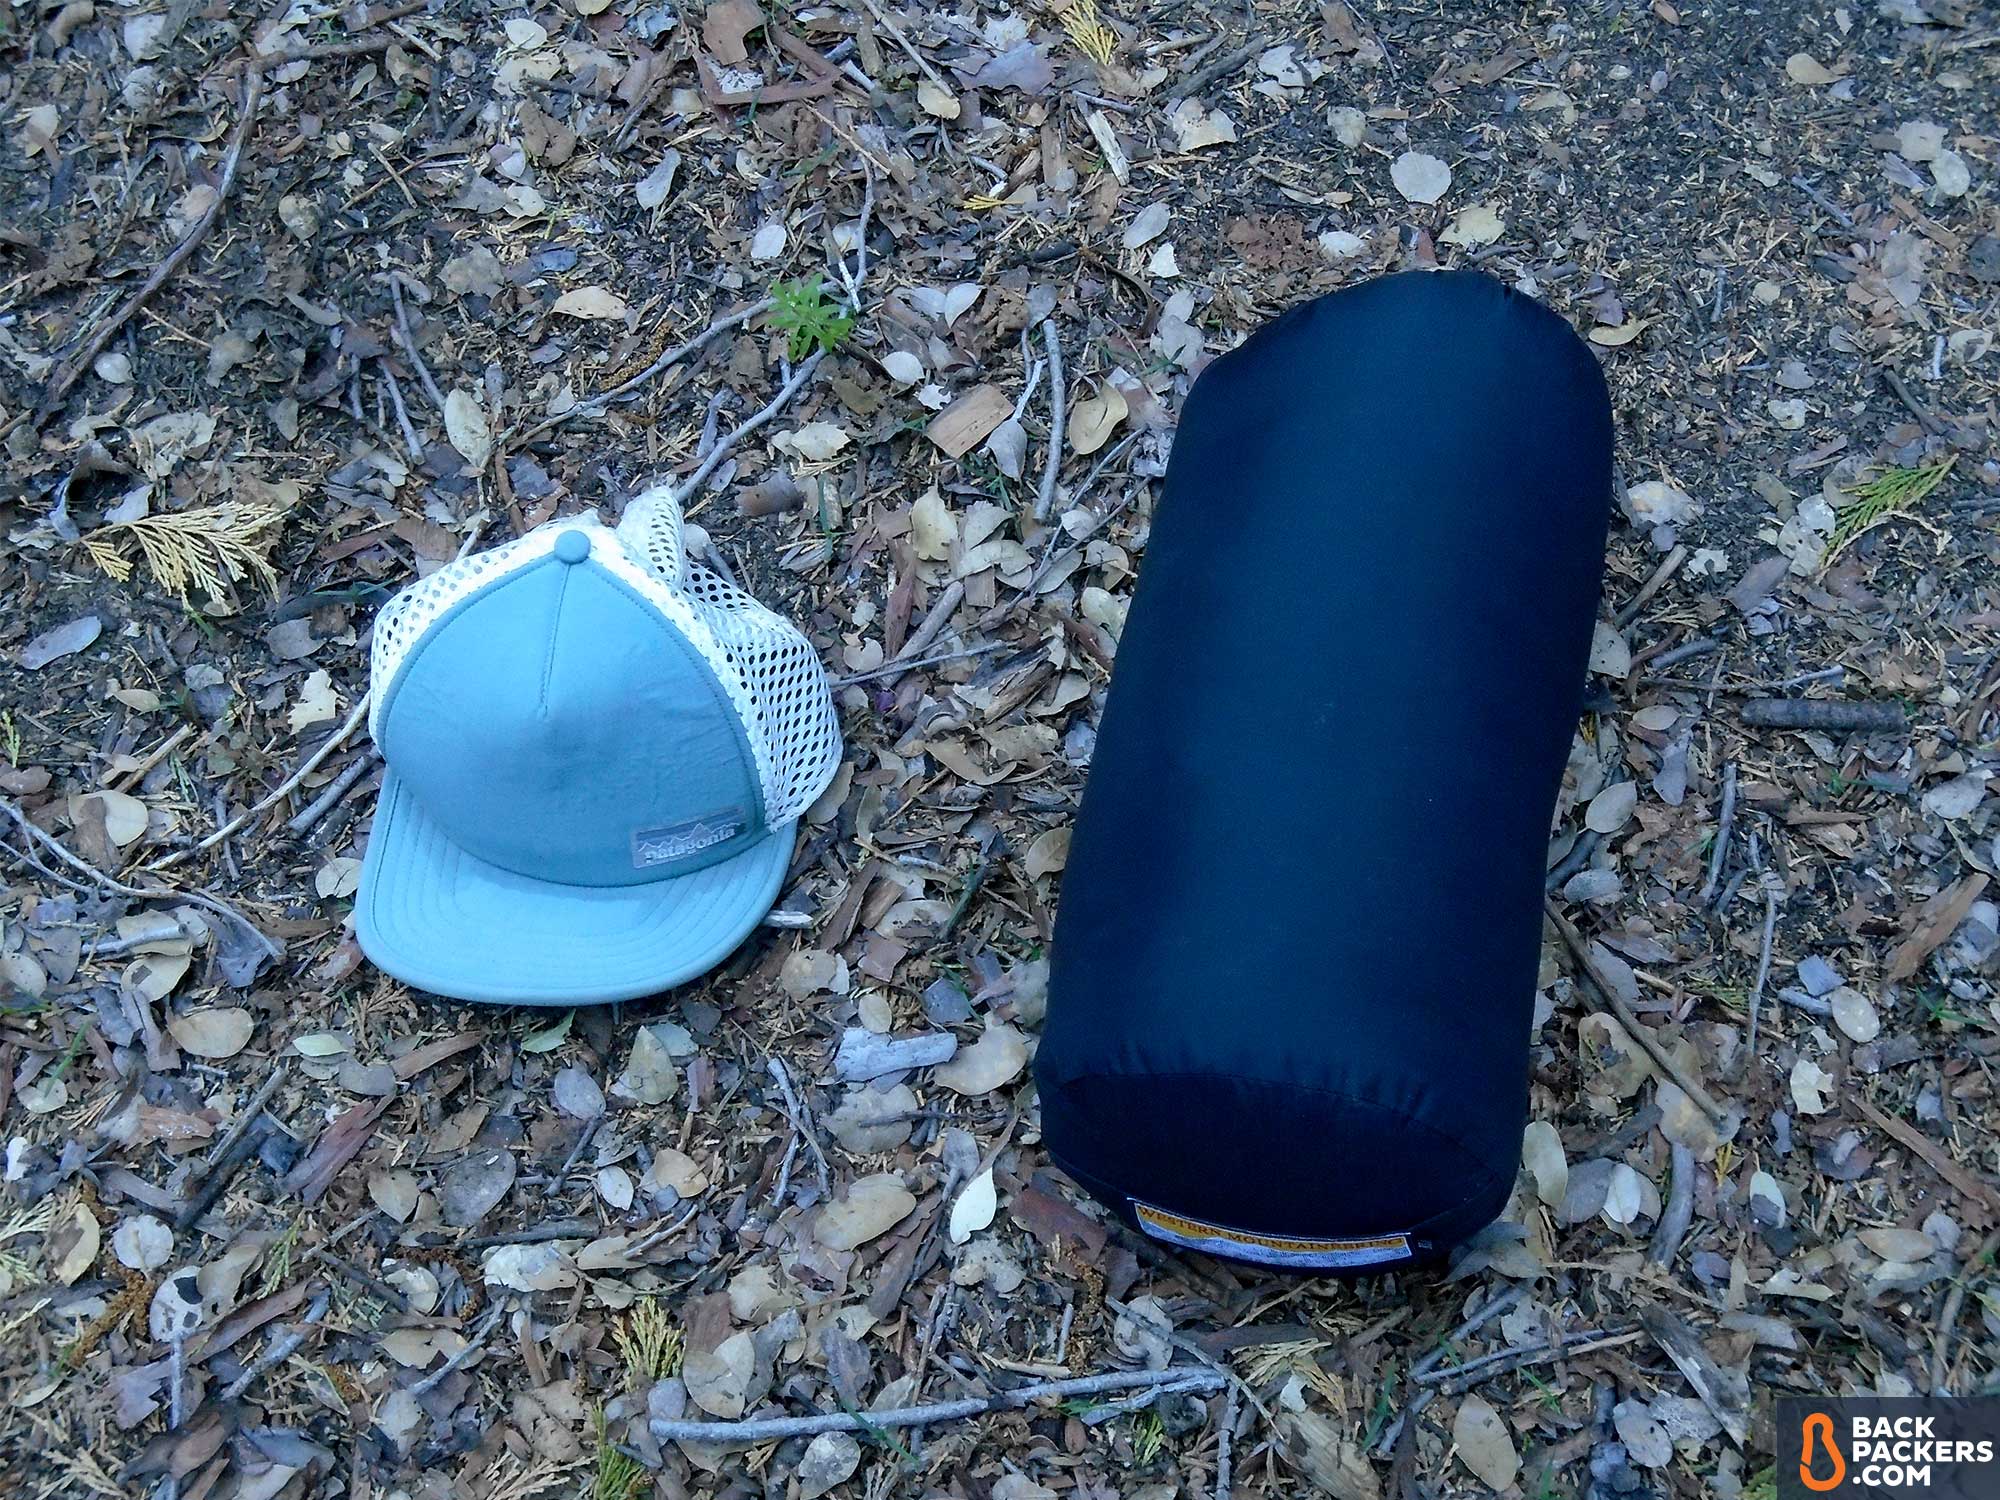 western mountaineering ultralite 20 degree sleeping bag